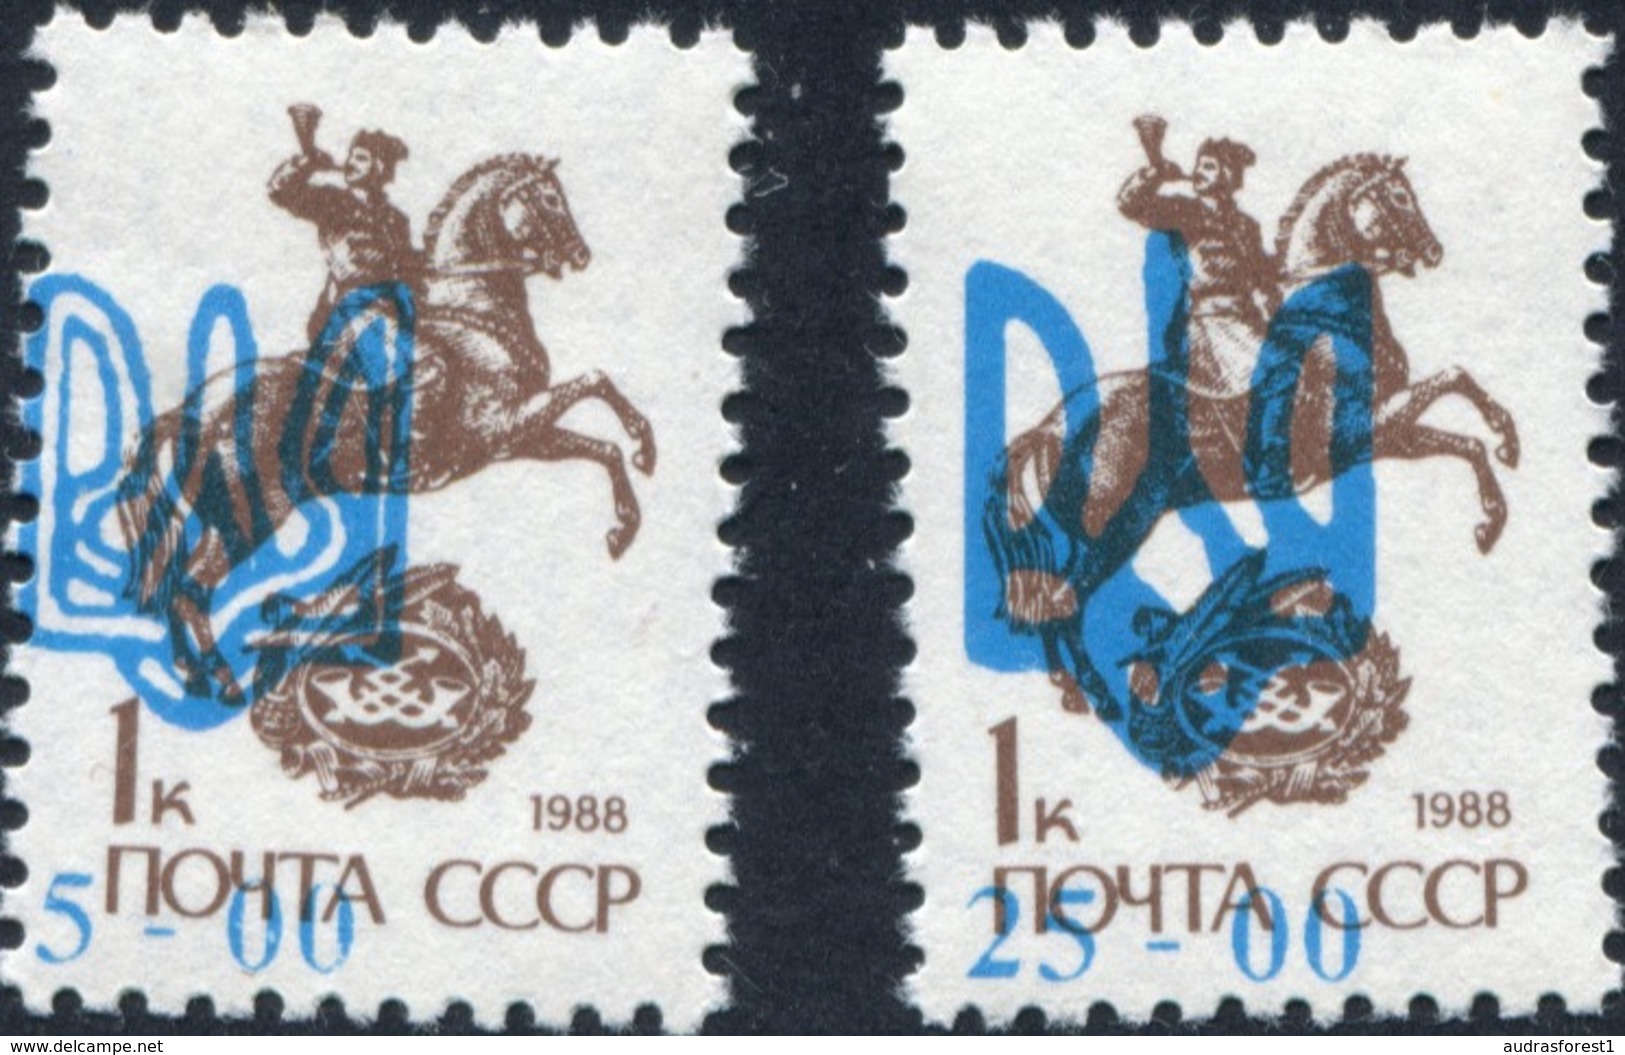 ODESSA Blue TRIDENT Overprint 1988 1K HORN USSR Definitive Set Of 2 Stamps 5.00 Karb 25.00 Karb 1992 Ukraine Local Post; - Ukraine